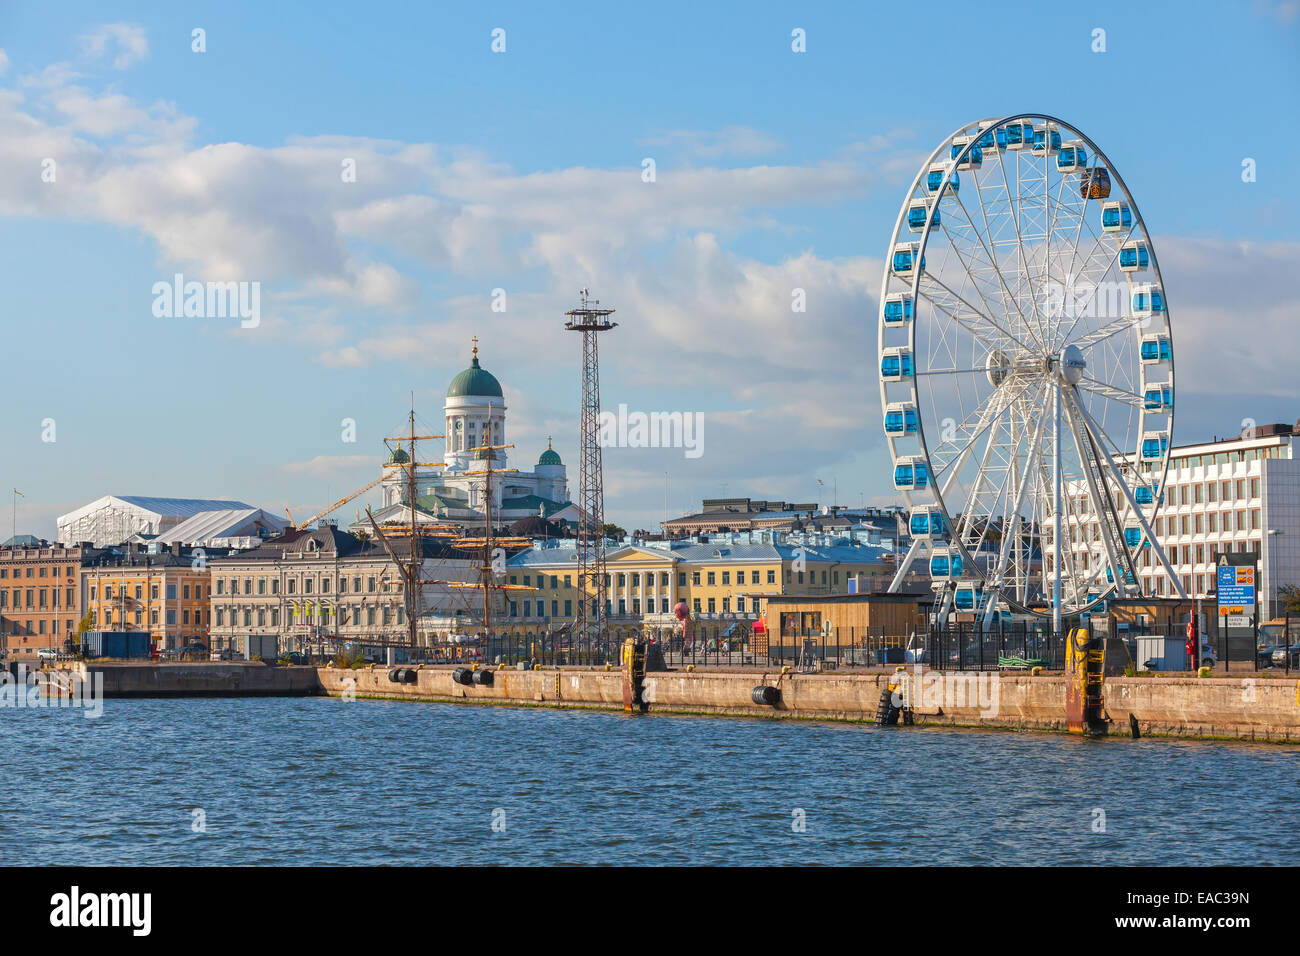 Helsinki, Finlandia - 13 Settembre 2014: central quay di Helsinki con navi ormeggiate, Cattedrale centrale e ruota panoramica Ferris Foto Stock